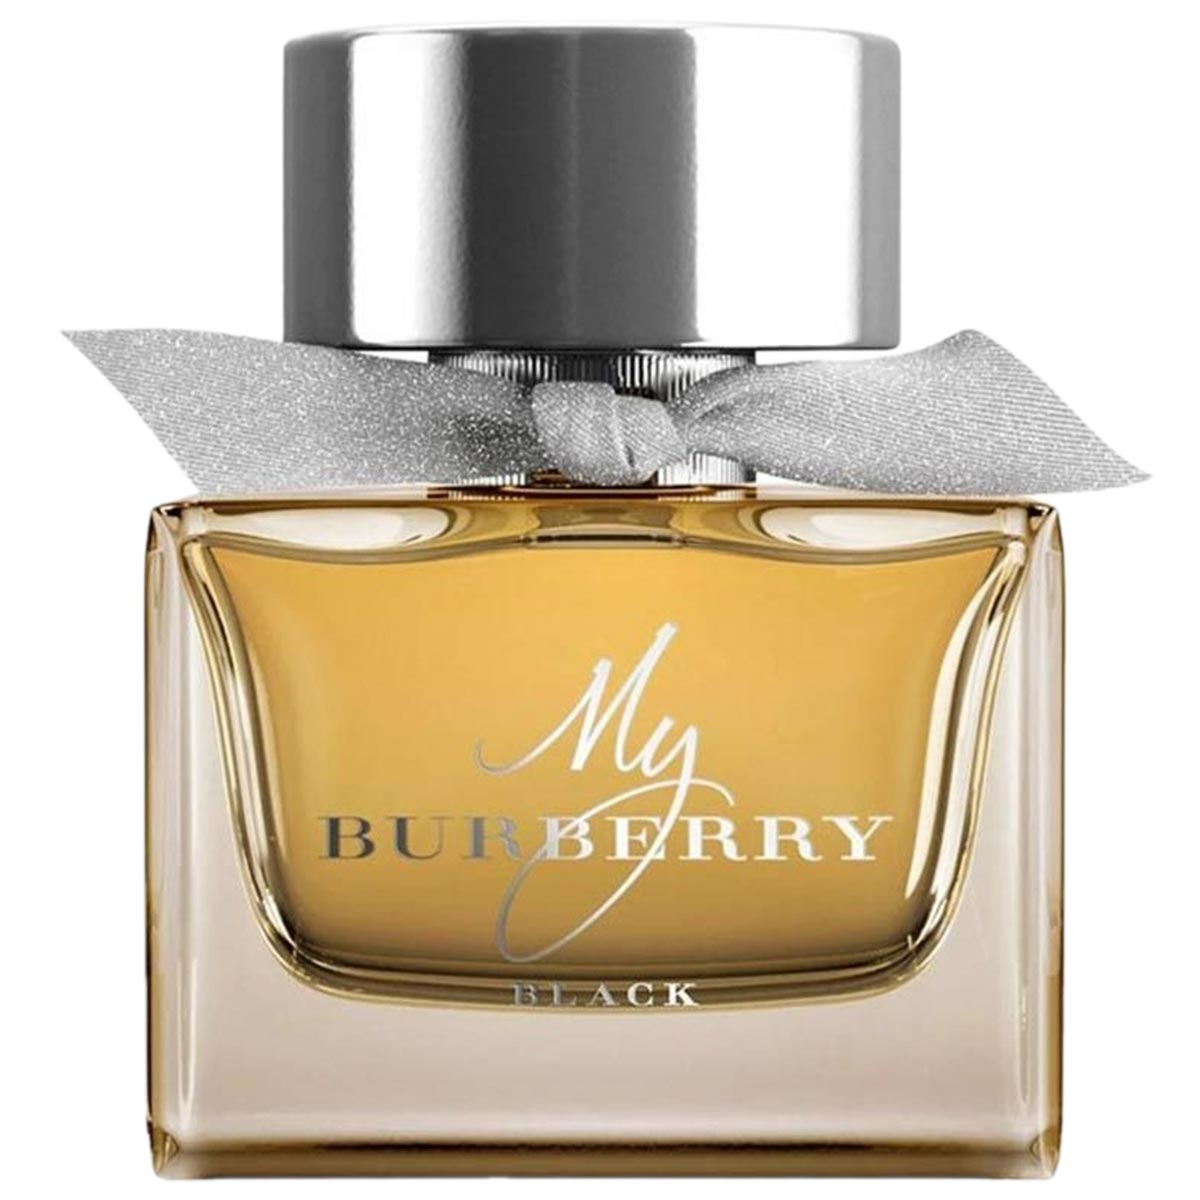 My Burberry Black Eau de Parfum Limited Edition